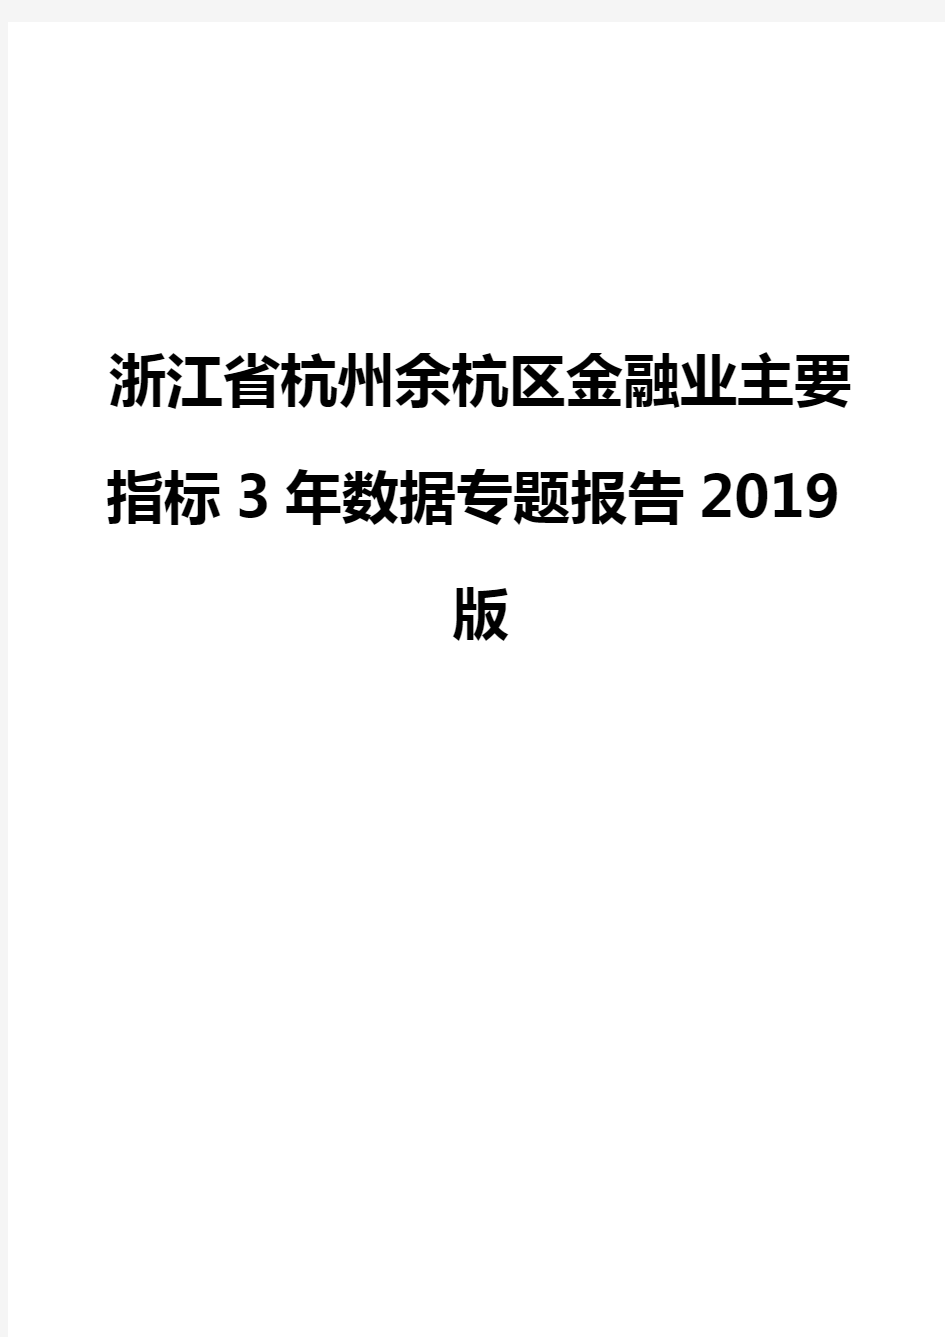 浙江省杭州余杭区金融业主要指标3年数据专题报告2019版